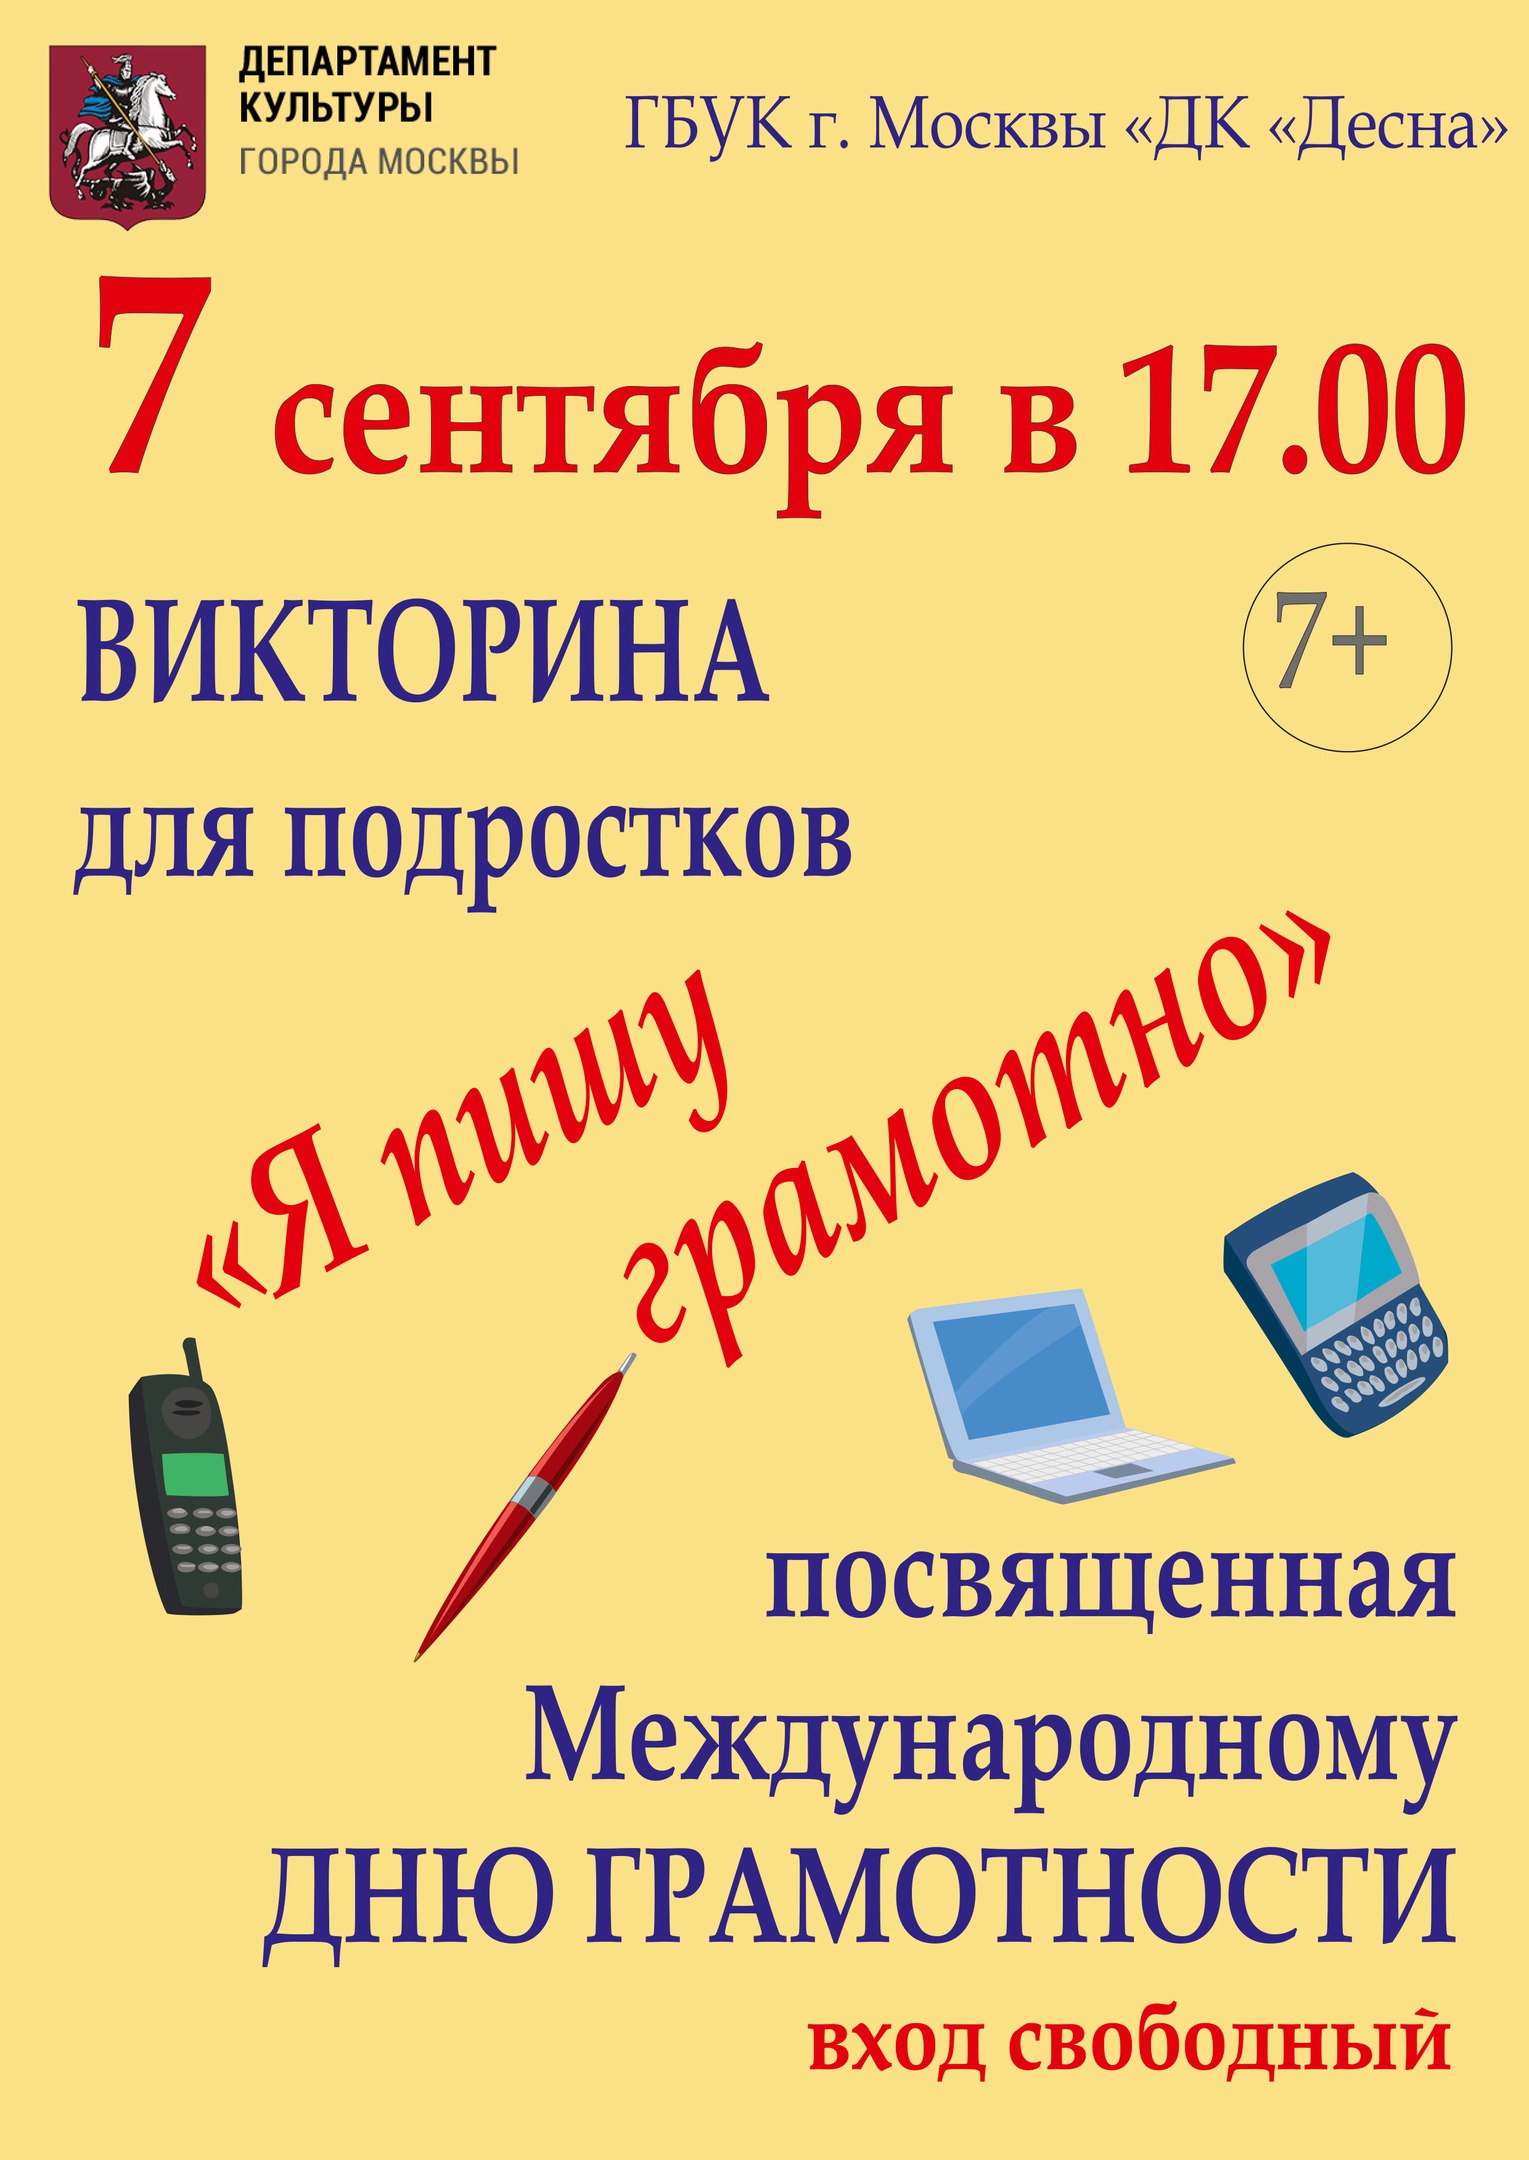 В ГБУК г.Москвы "ДК "Десна" 7 сентября в 17.00 состоится викторина для подростков "Я пишу грамотно", посвященная Международному Дню грамотности